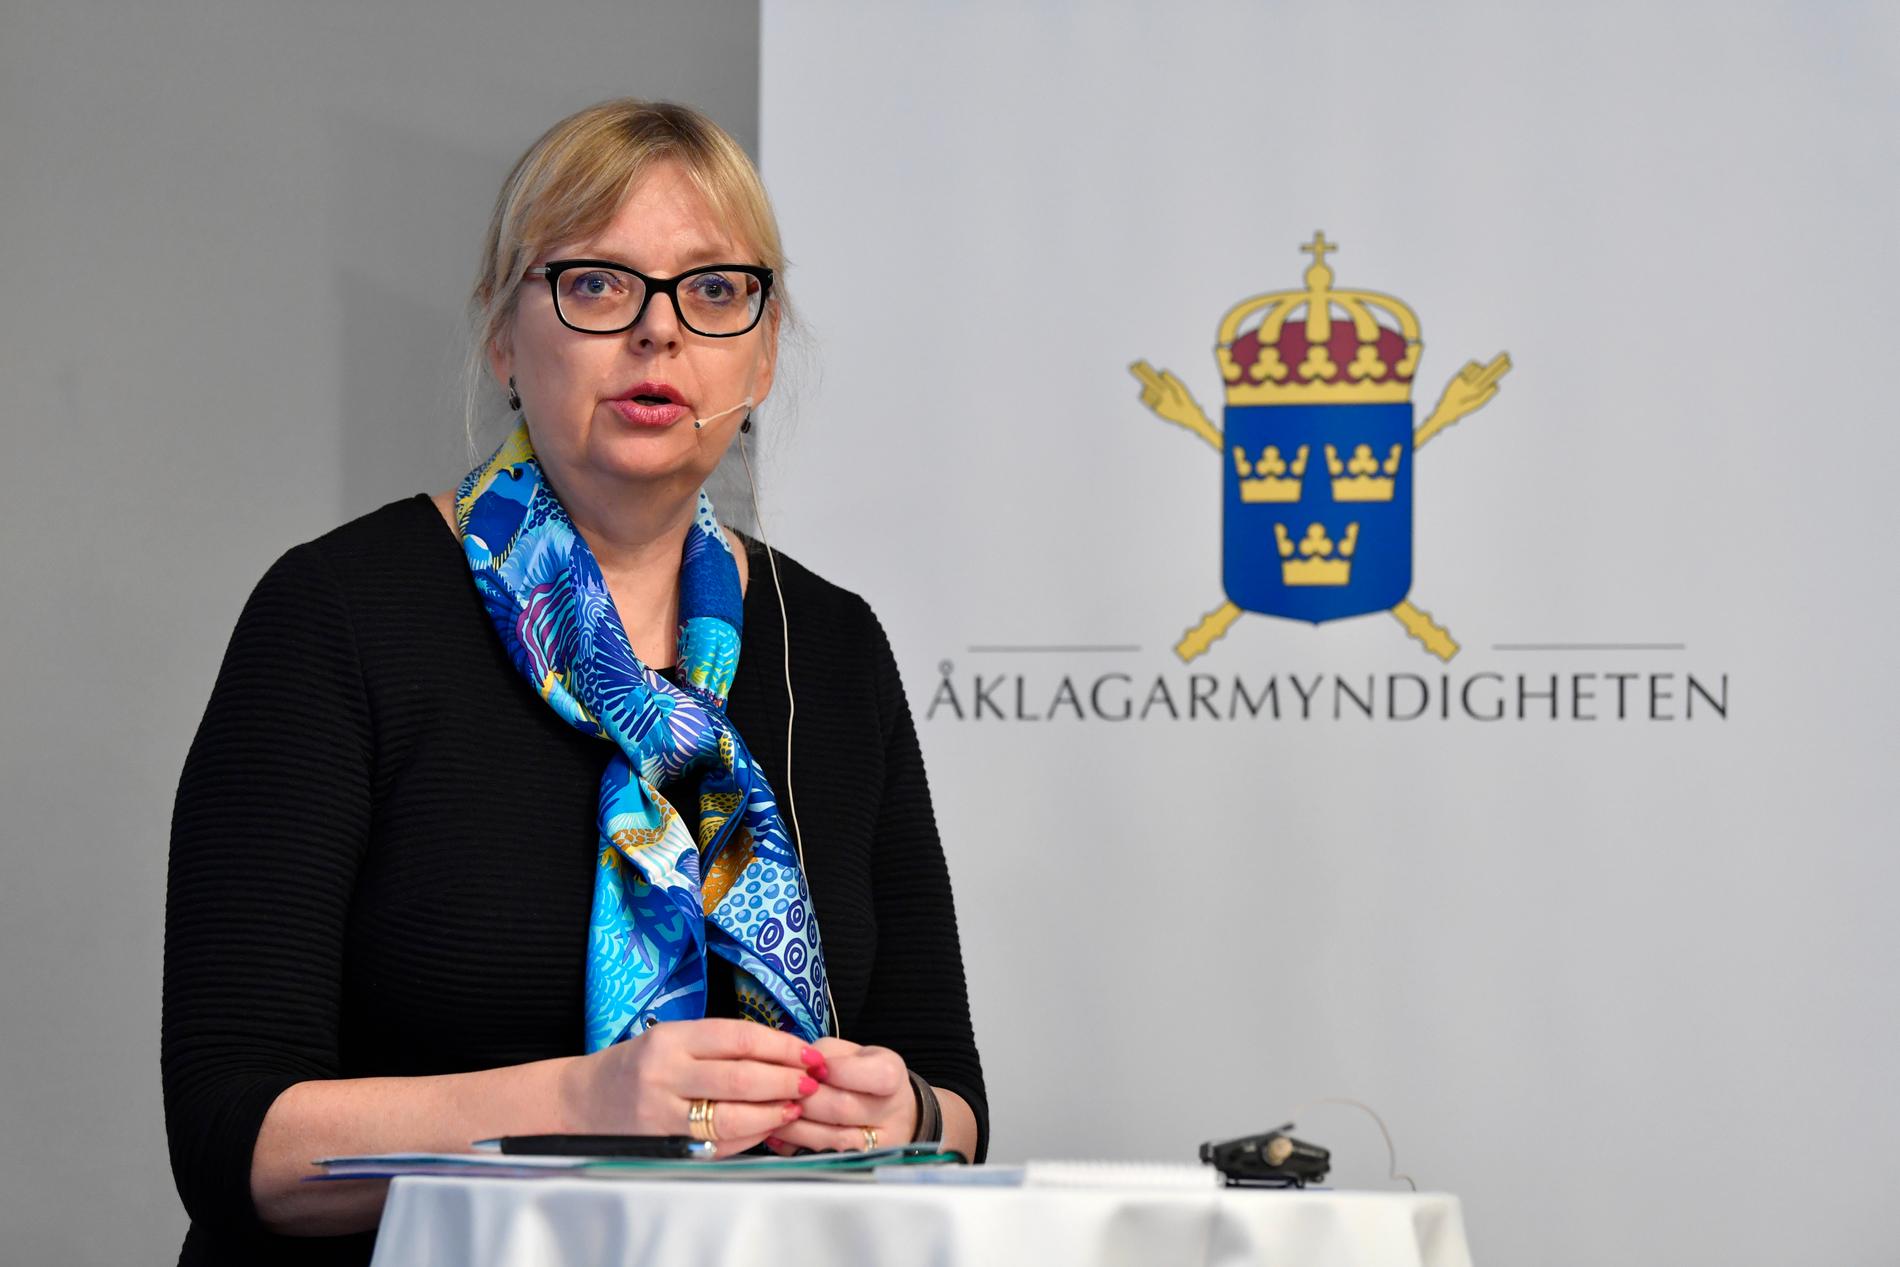 Åklagaren Eva-Marie Persson berättar att hon beslutat att lägga ner förundersökningen mot Julian Assange.